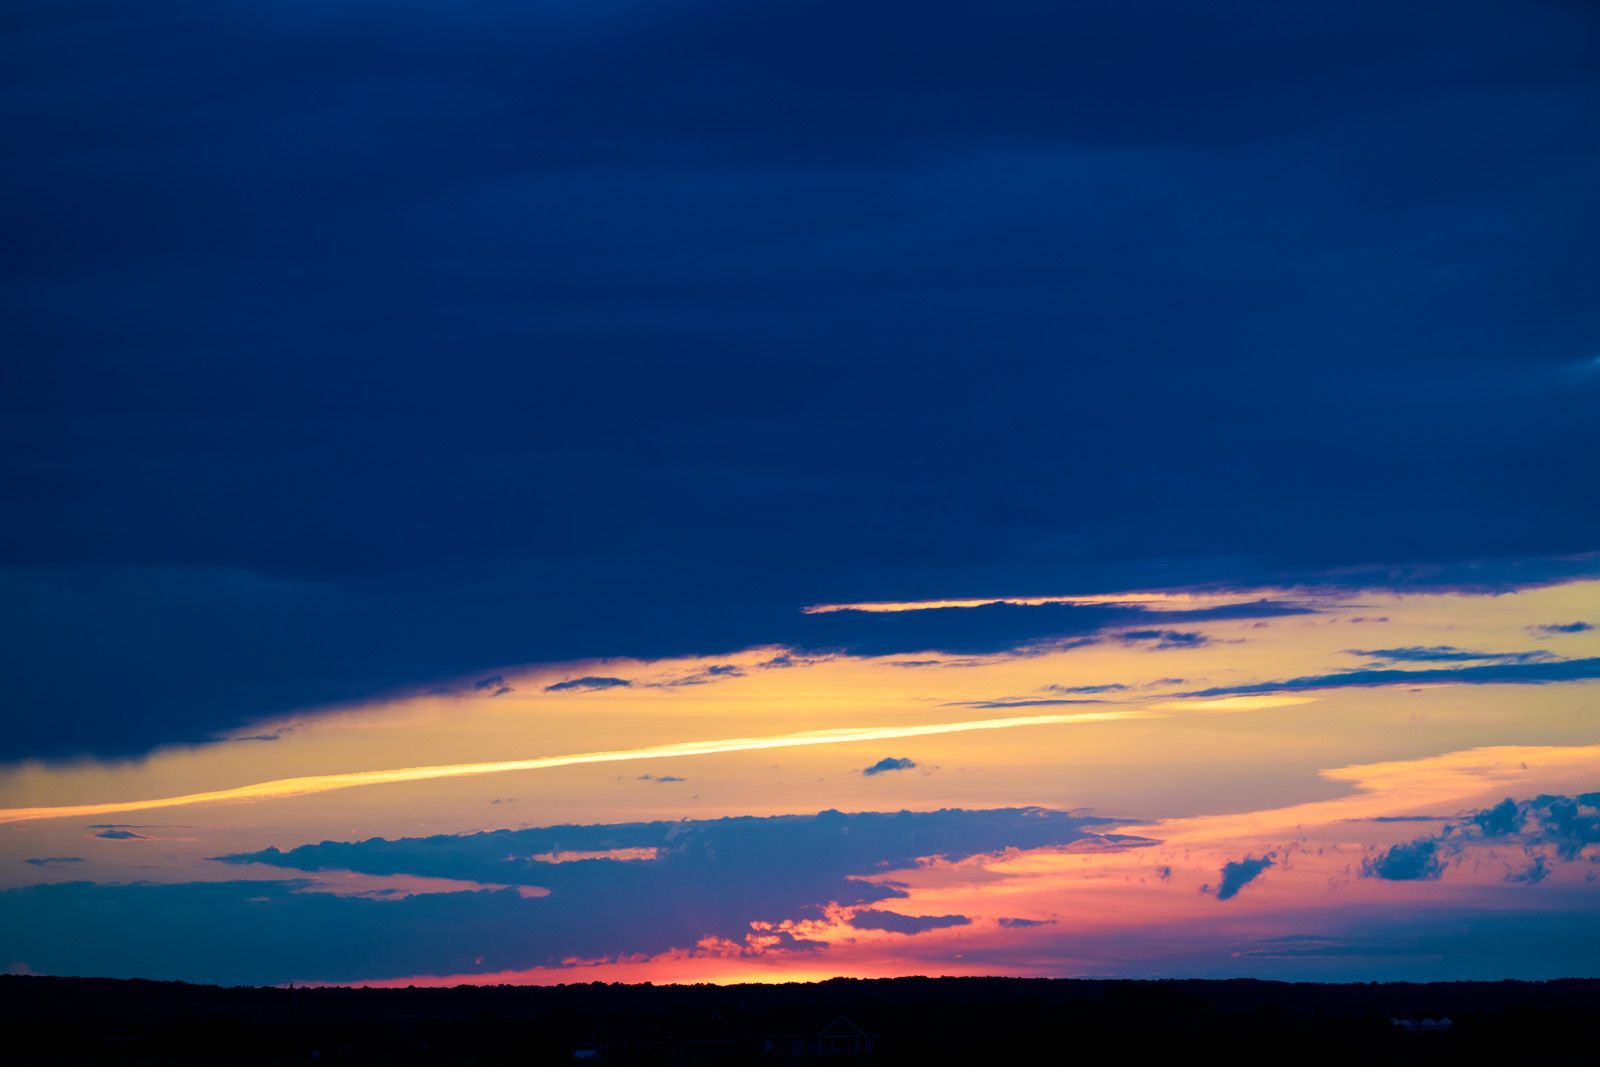 A beautiful sunset near Morden, Manitoba, Canada.